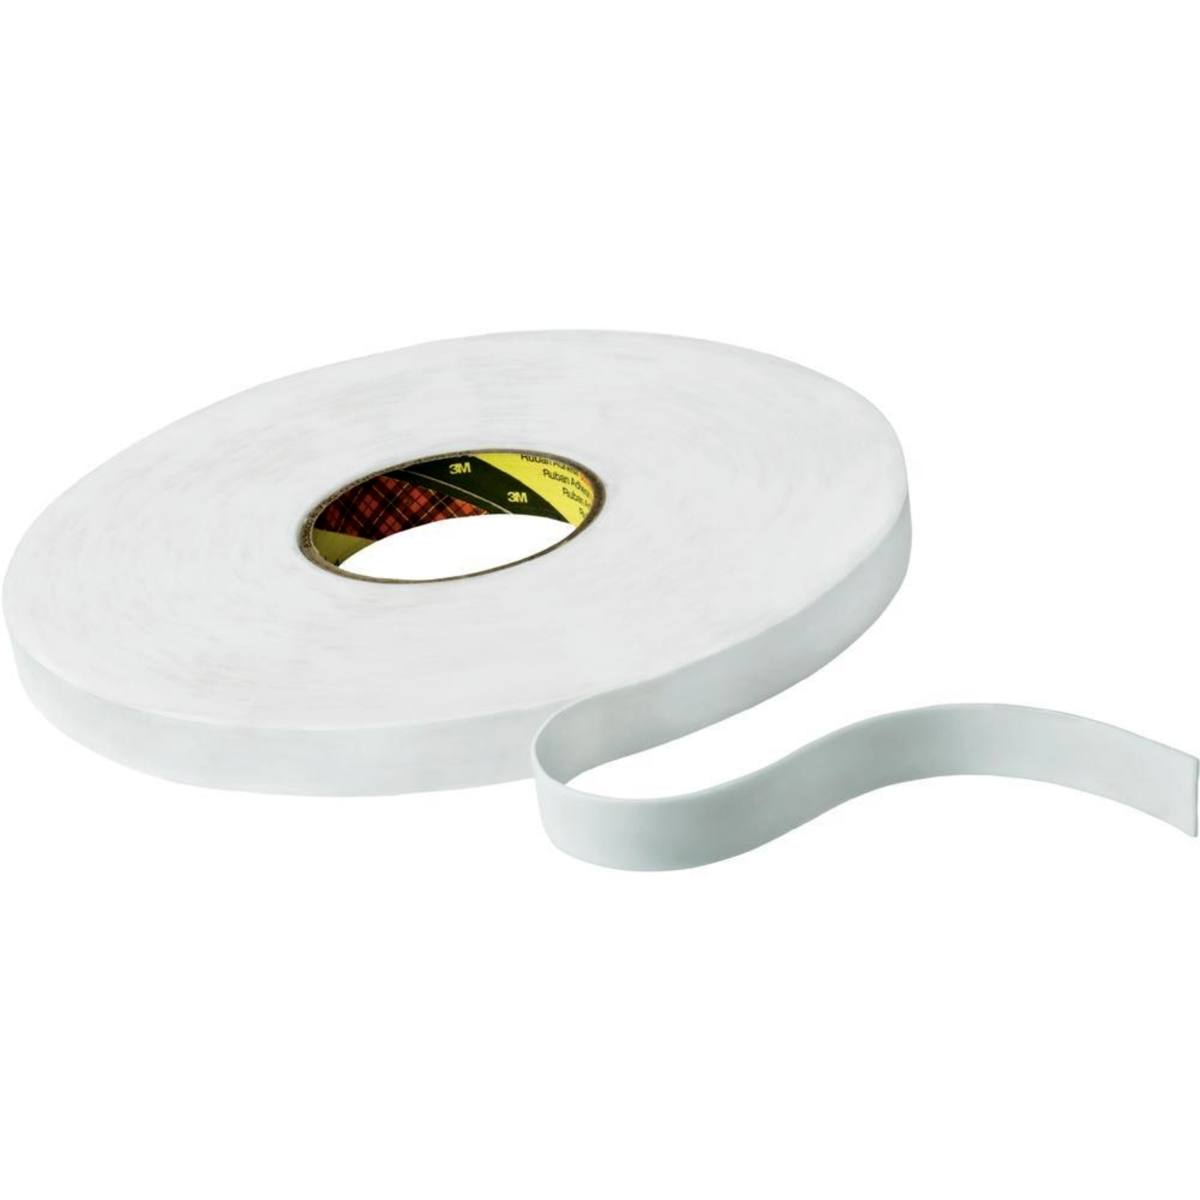 Cinta adhesiva de espuma de PE 3M con adhesivo de resina de caucho 9528, blanca, 9 mm x 66 m, 0,8 mm